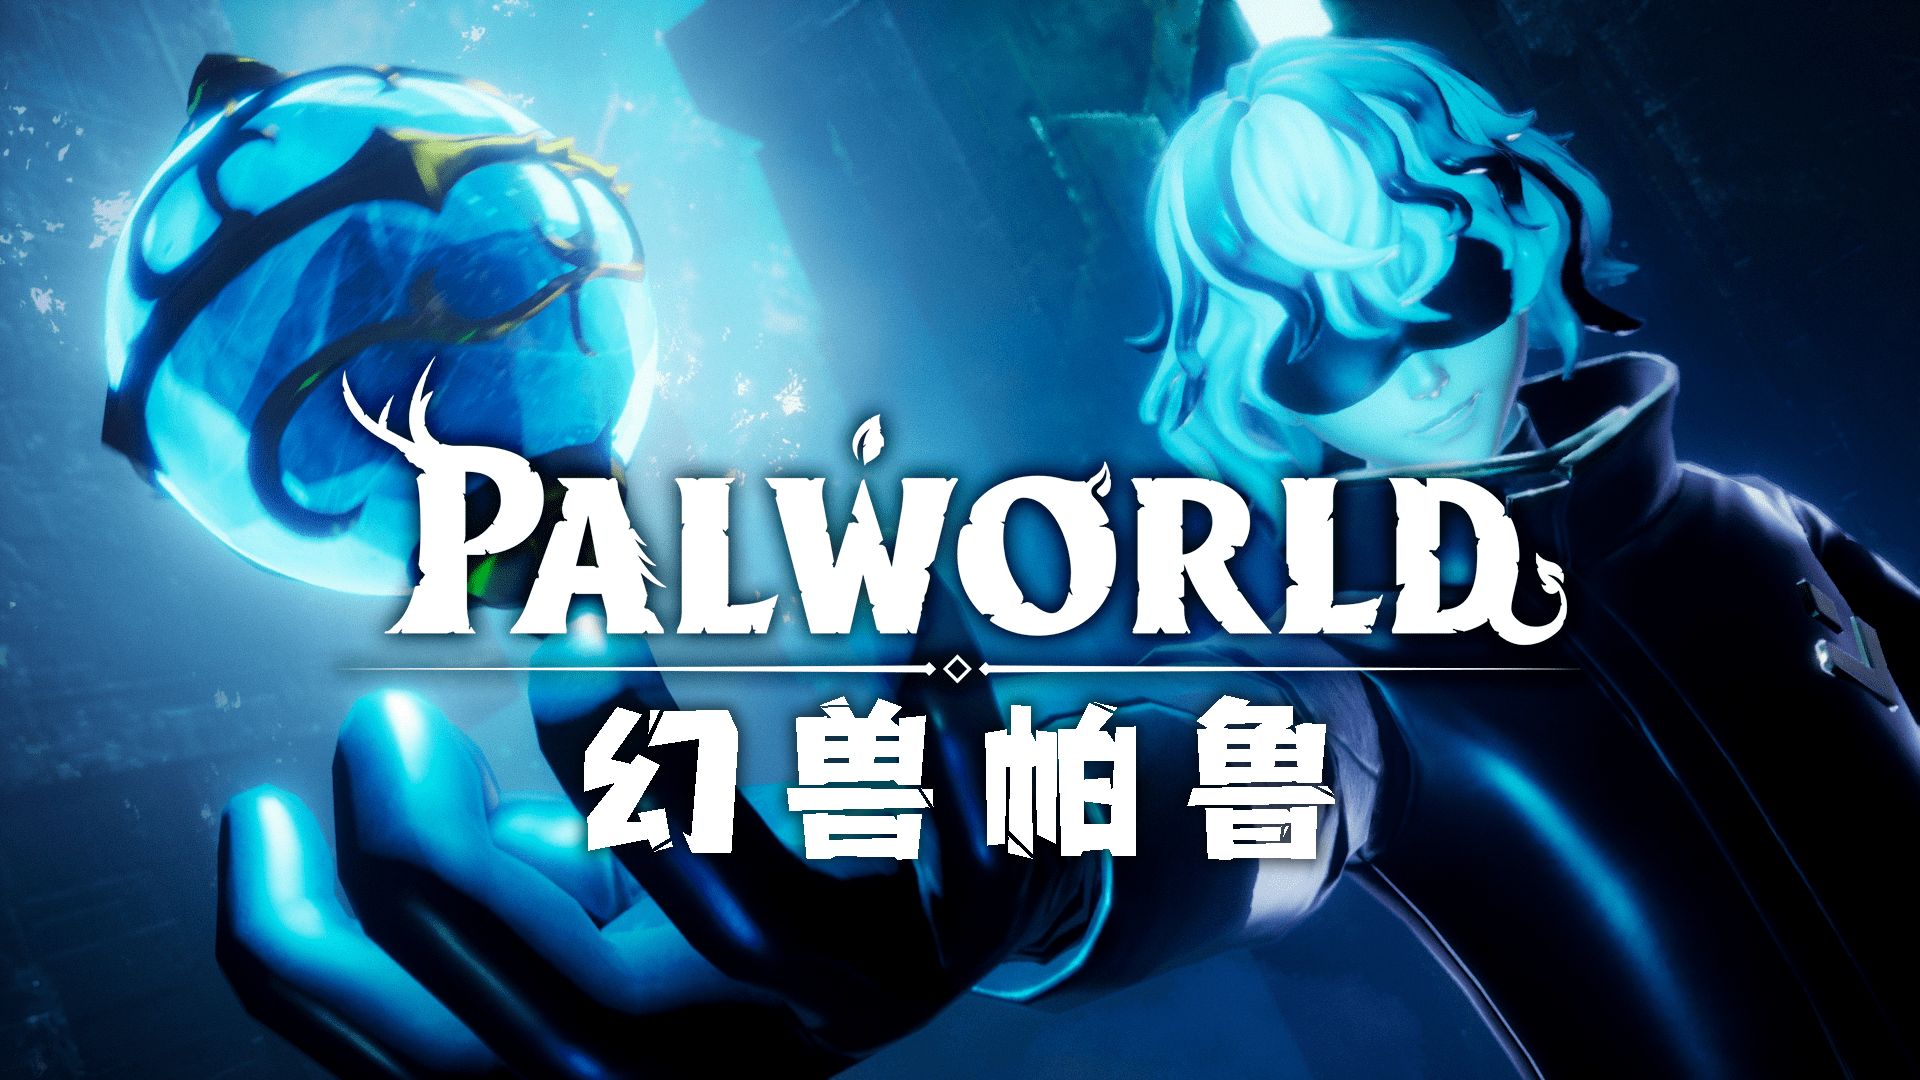 【幻兽帕鲁Palworld搭建】阿里云服务器1分钟部署幻兽帕鲁游戏保姆级教程 